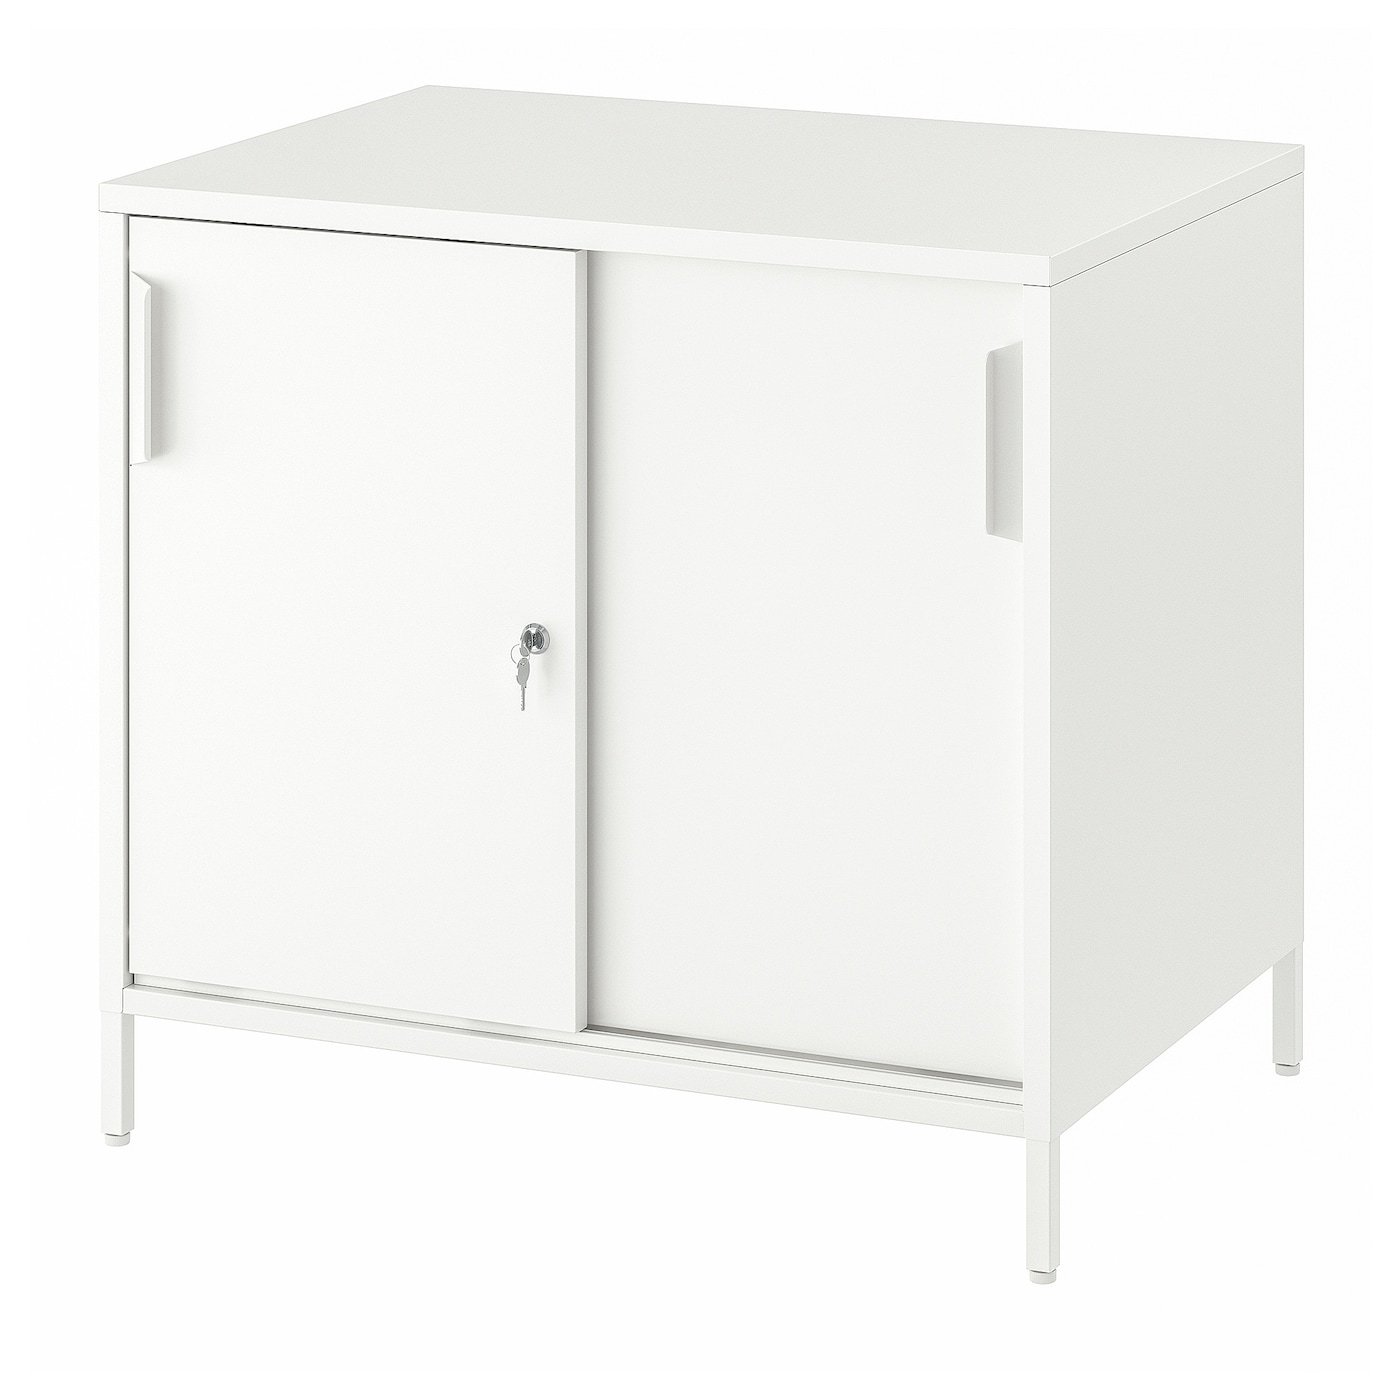 Тумба для документов - IKEA TROTTEN, белый, 80х75 см, ТРОТТЕН ИКЕА